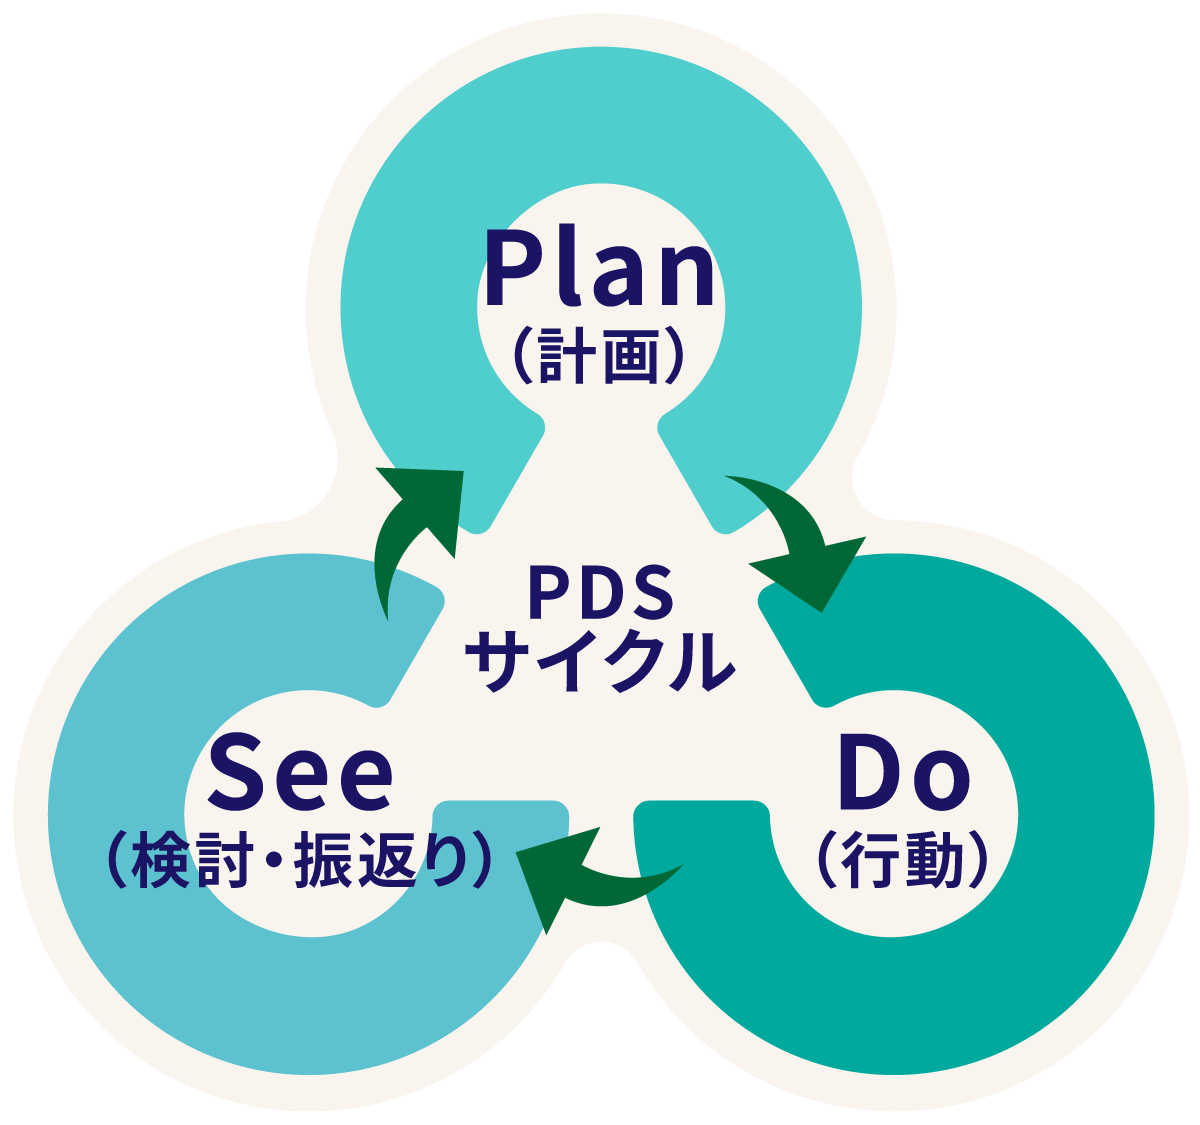 PDSサイクルのイメージ図